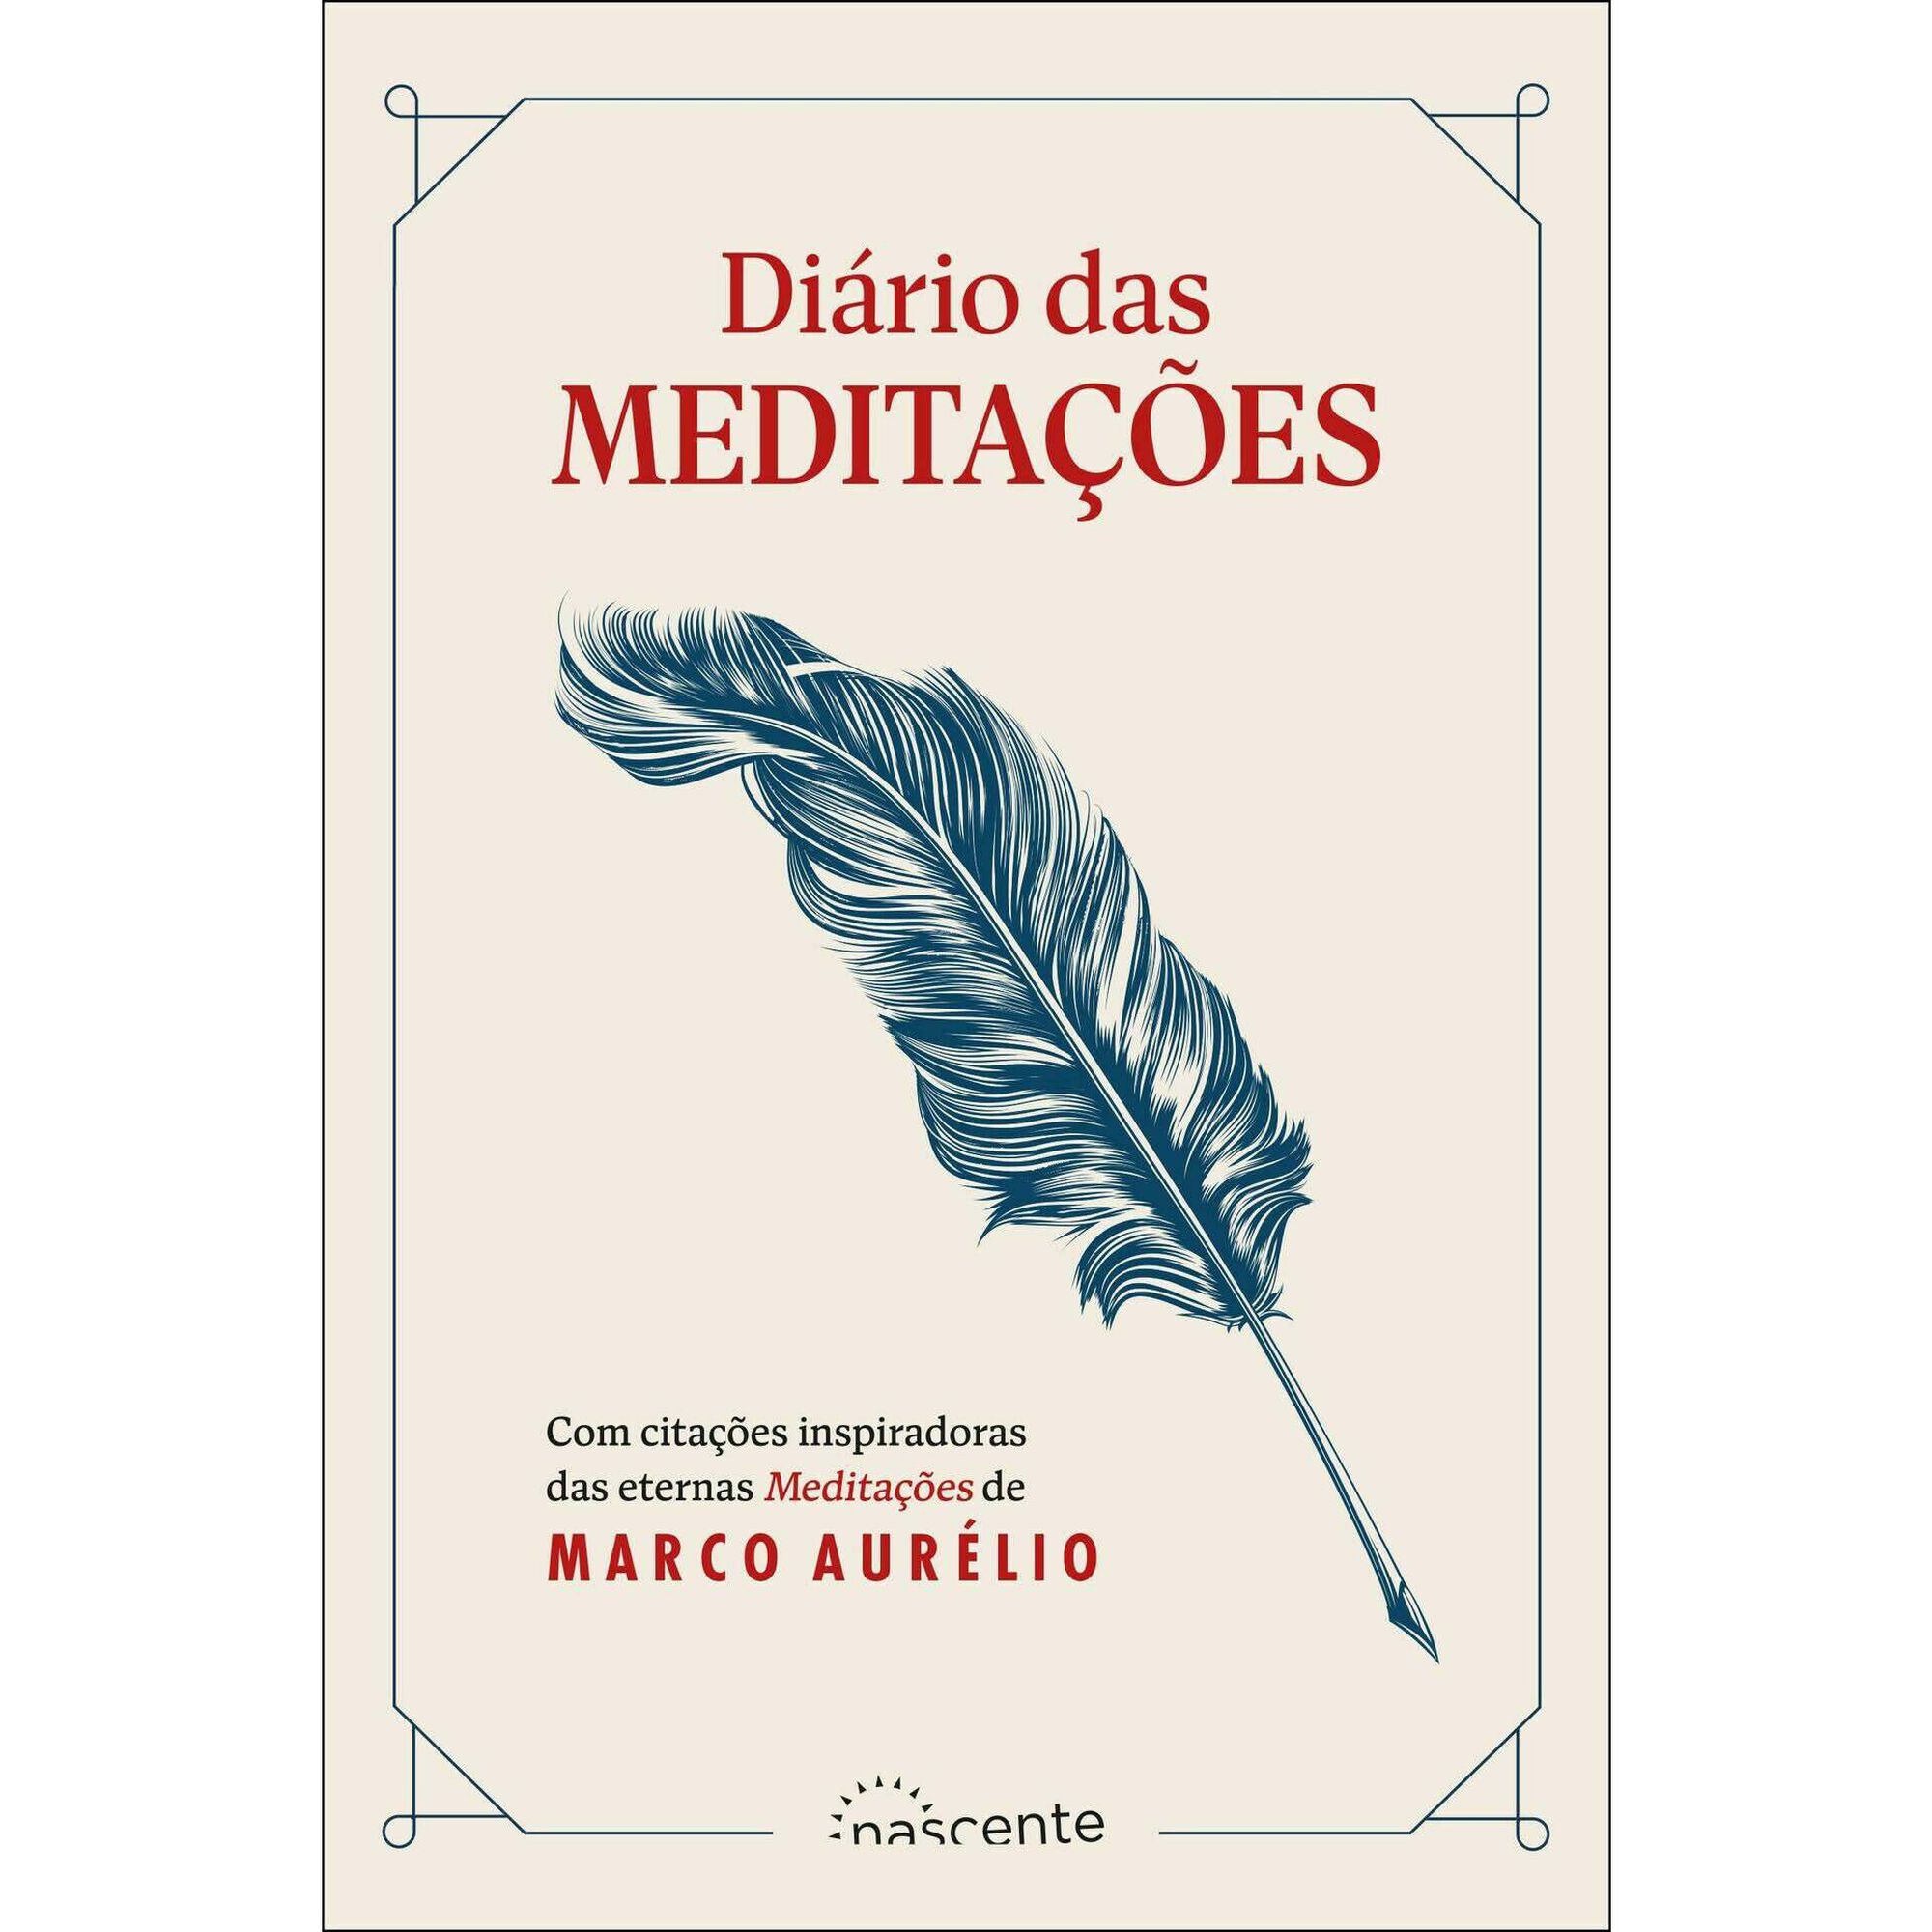 Discussão - Meditações de Marco Aurélio